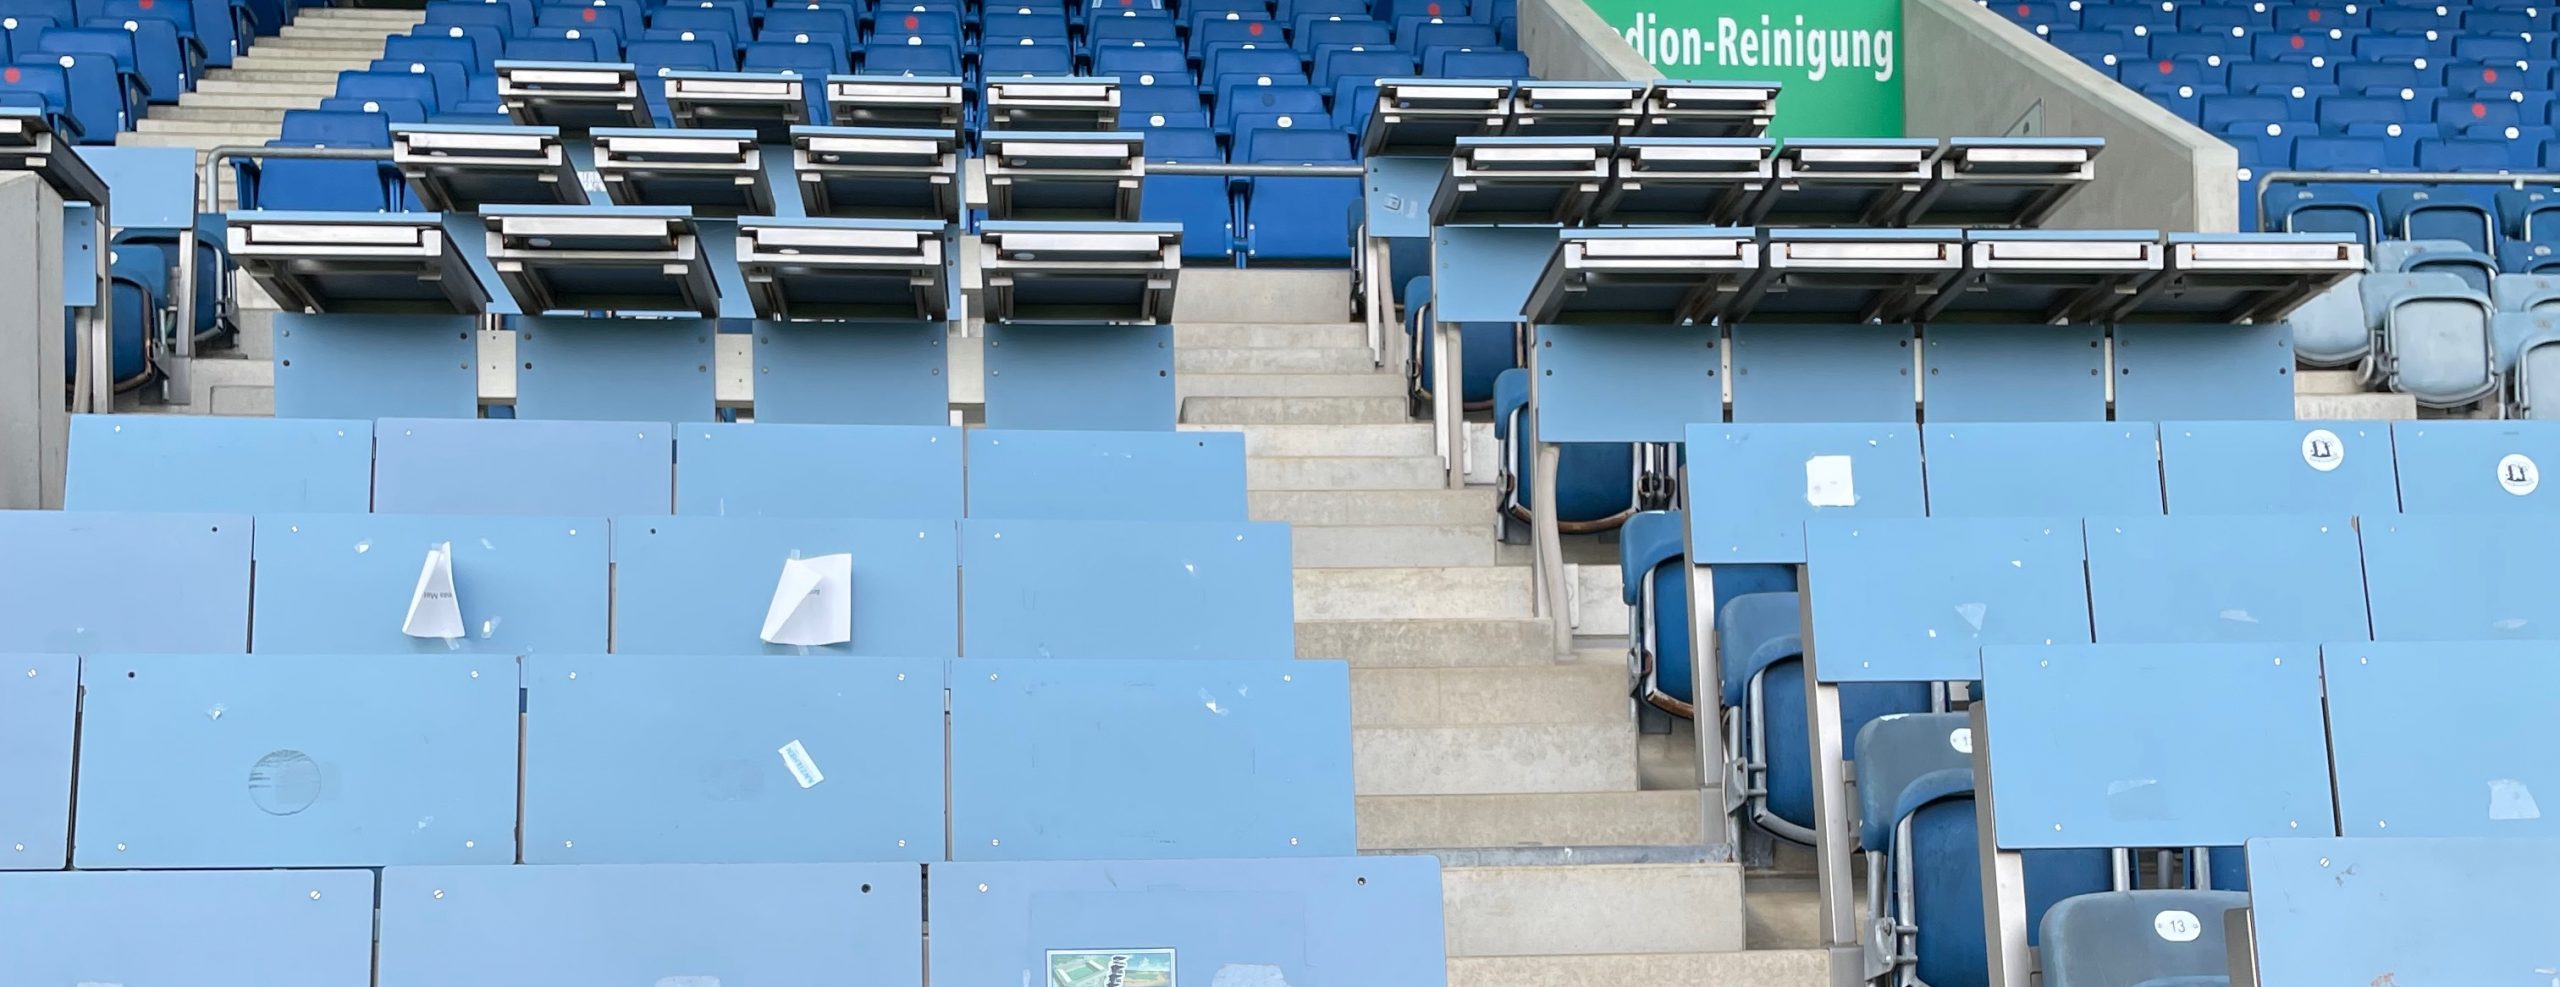 Ostseestadion: Seat Kills eliminieren